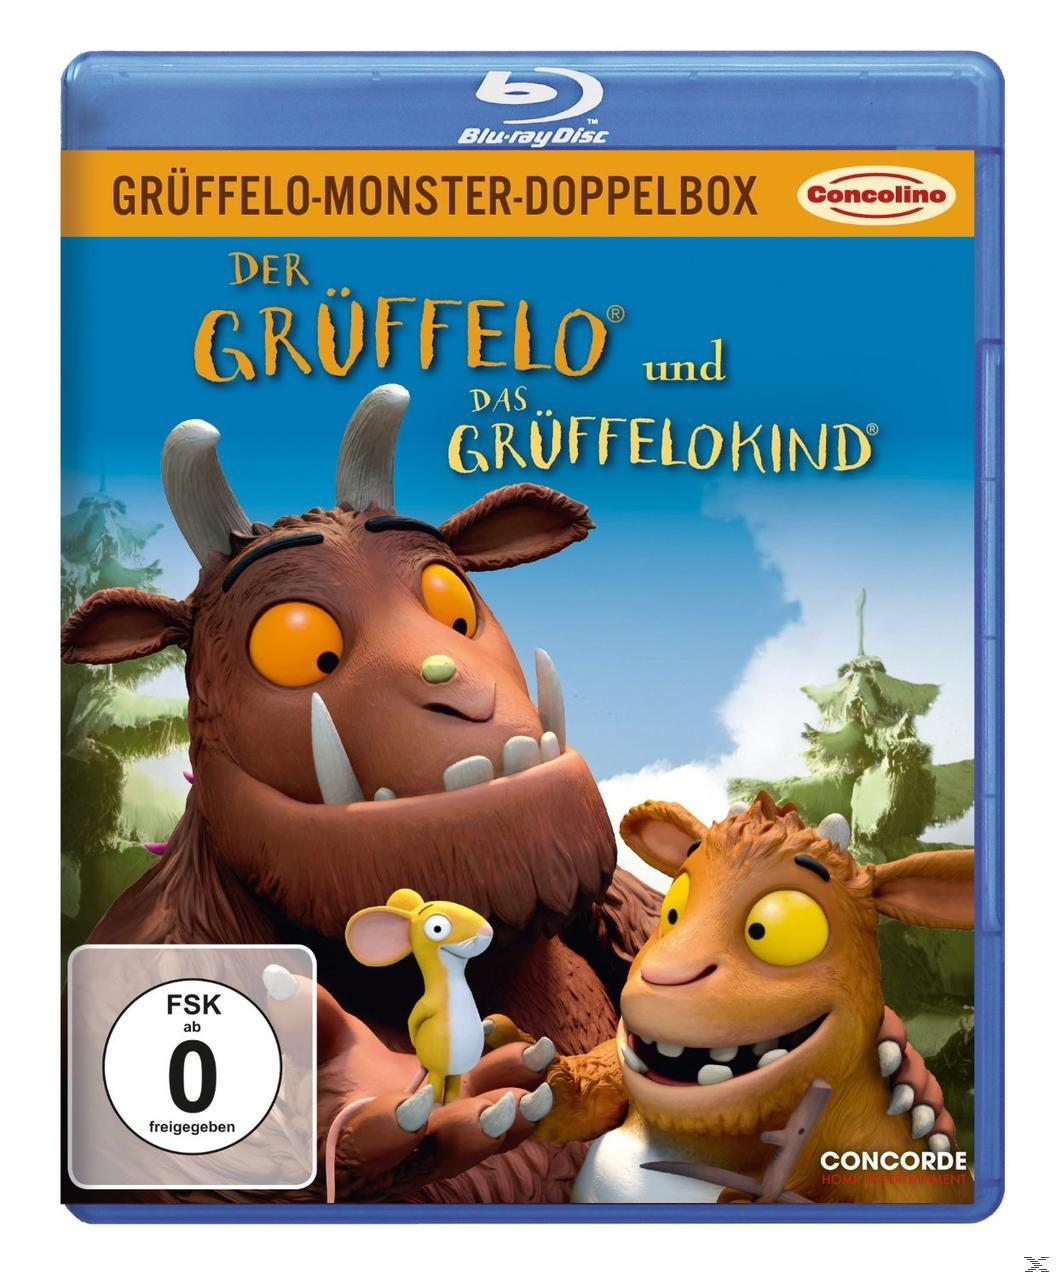 Grüffelo-Monster-Doppelbox - Grüffelokind Grüffelo Der Blu-ray Das und